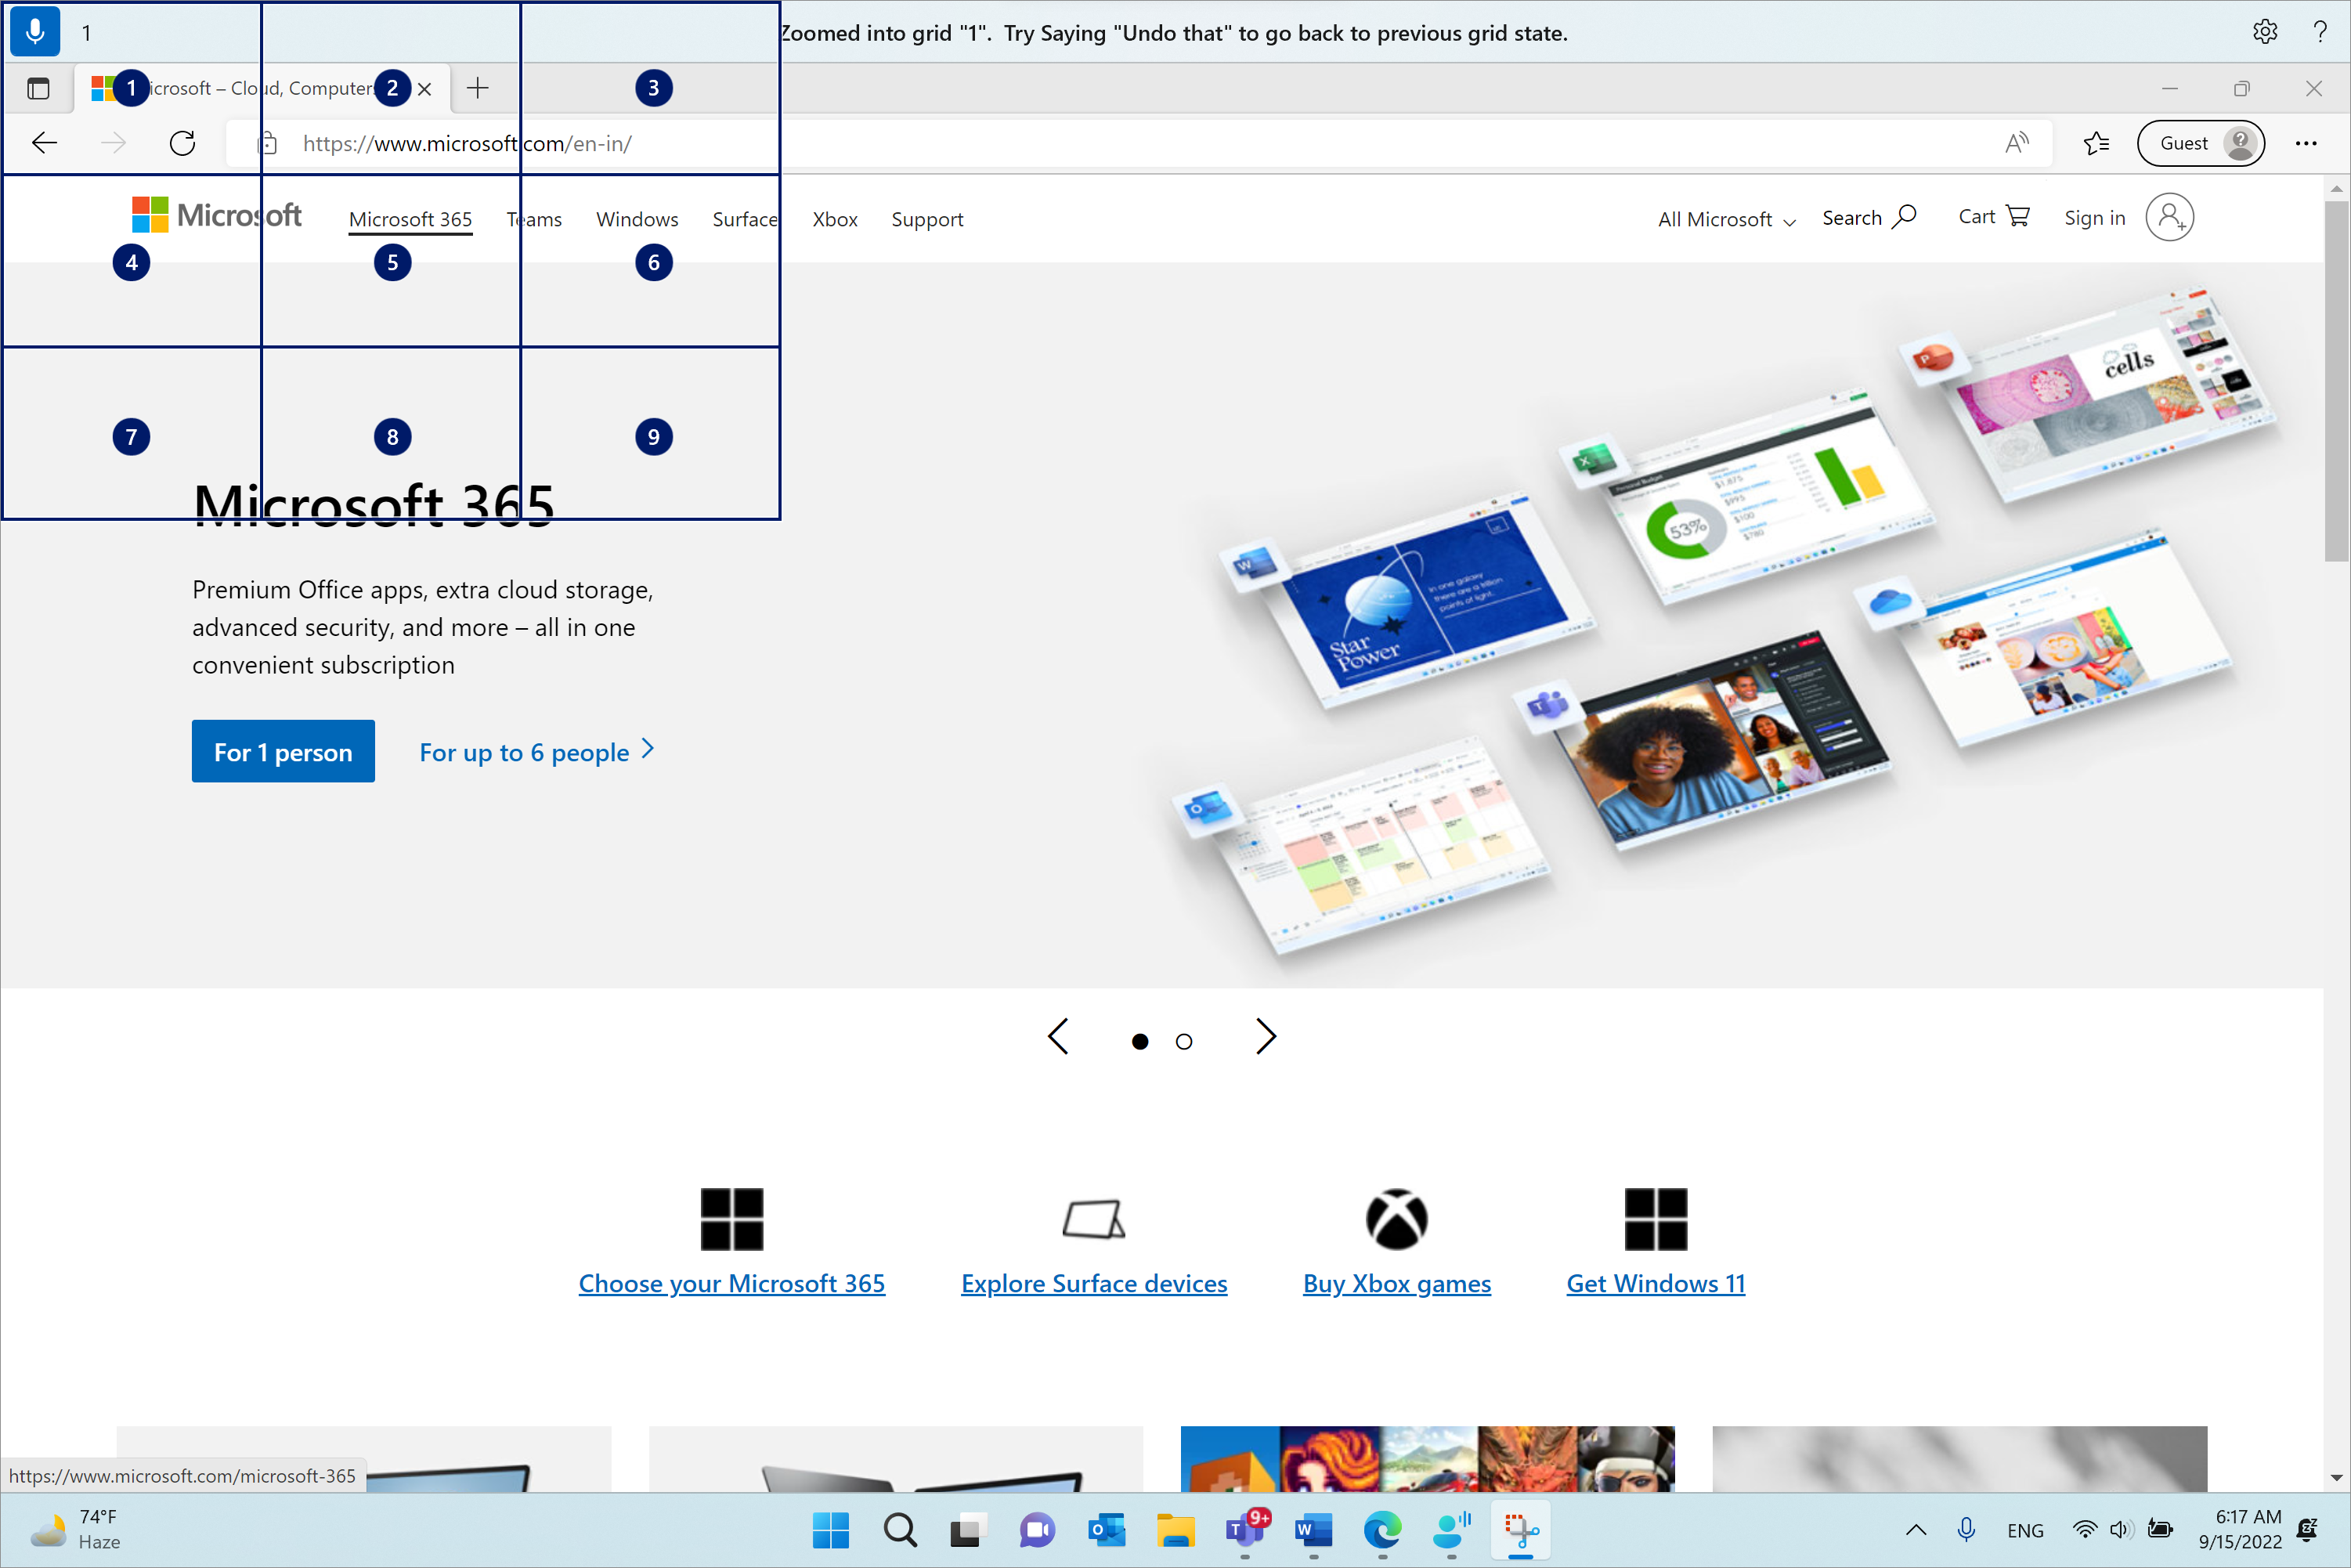 Microsoft Edge er åpen og på Microsoft.com-siden. Taletilgangslinjen er øverst og i lyttetilstand. Kommandoen som er utstedt, er «1», og tilbakemeldingen som vises, er «Zoomet inn i rutenettet «1». Prøv å si «angre det» for å gå tilbake til forrige rutenetttilstand.»